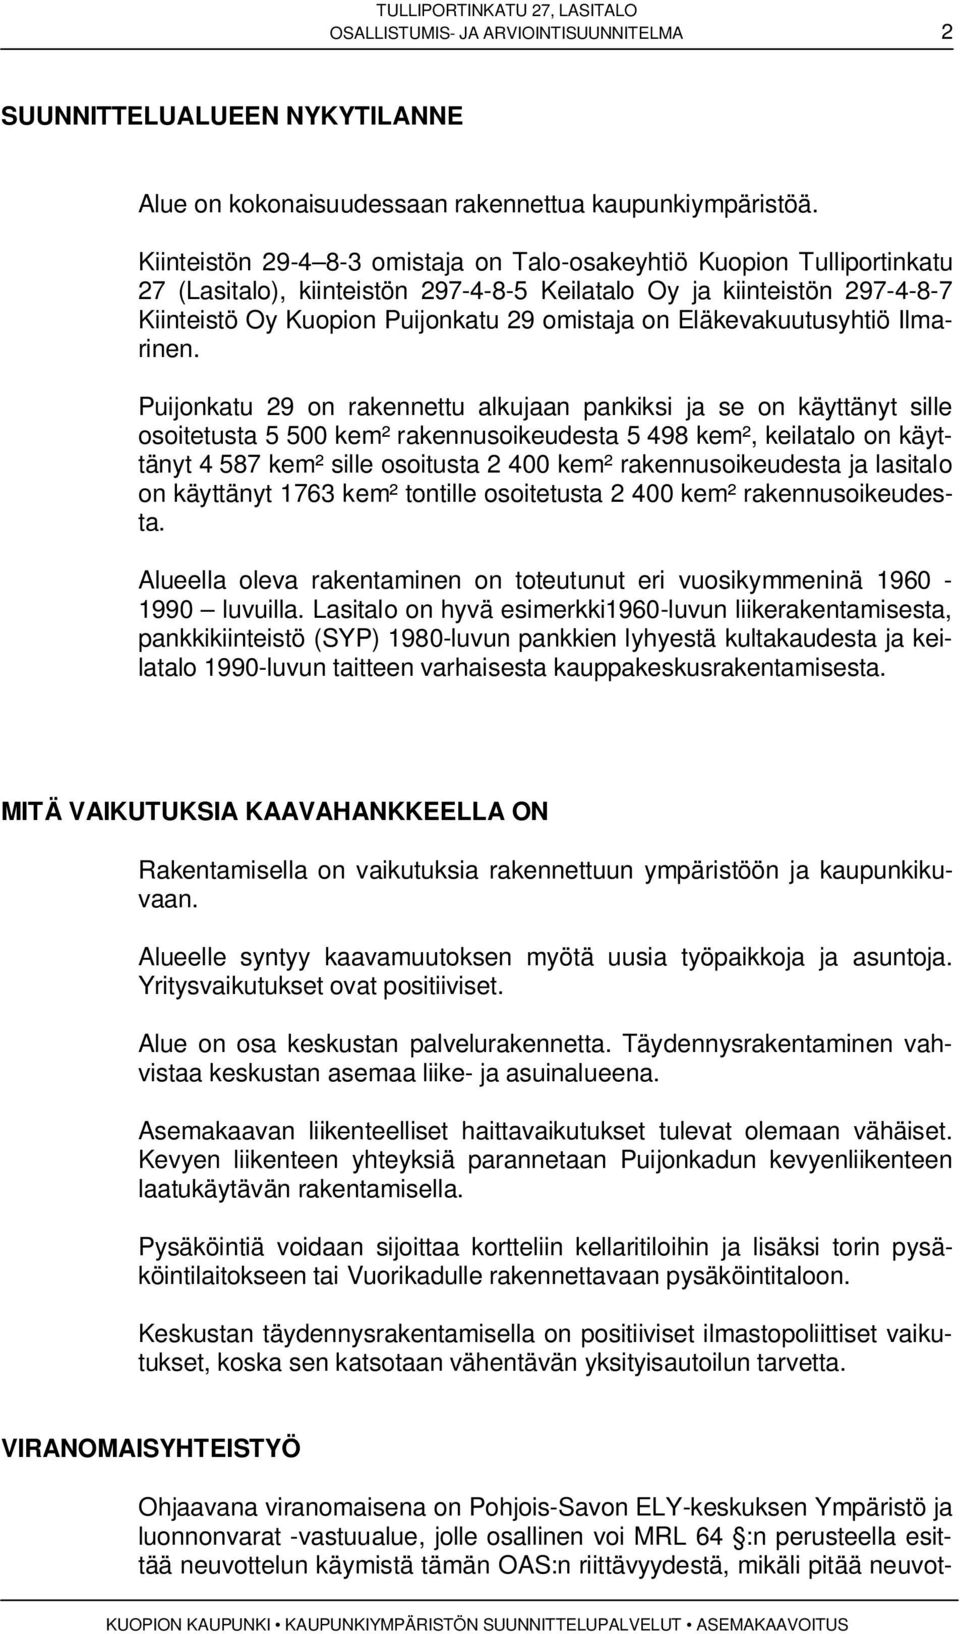 Eläkevakuutusyhtiö Ilmarinen.